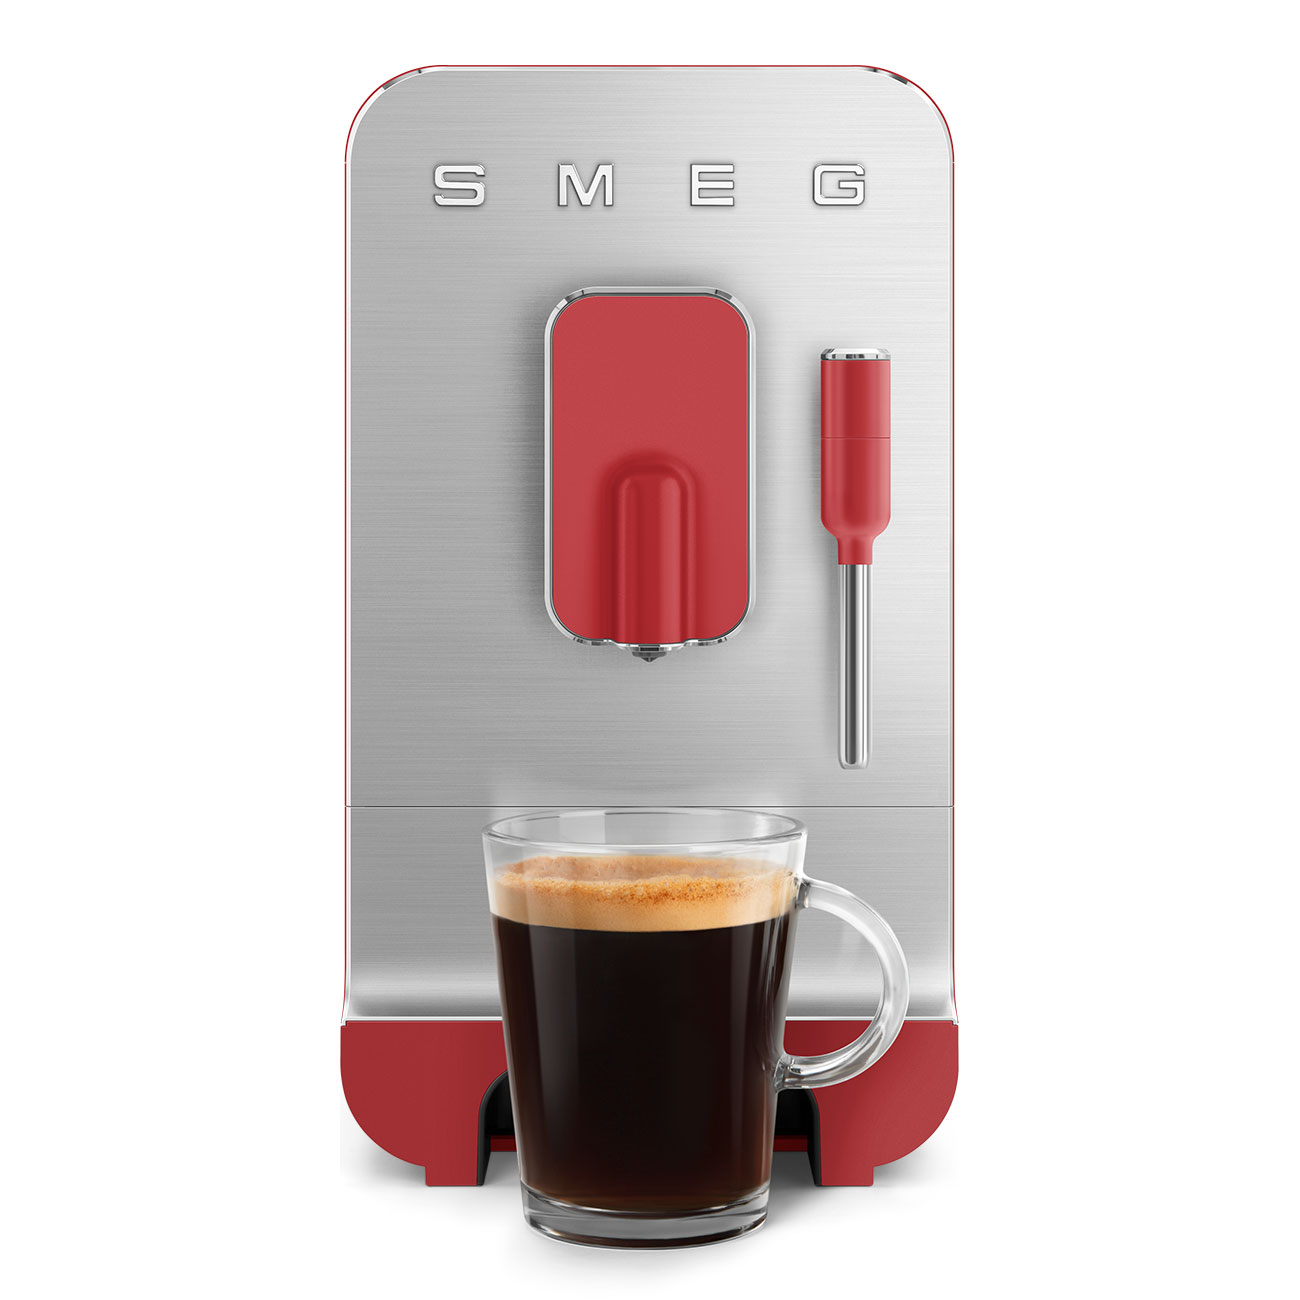 Kompakt-Kaffeevollautomat, Rot-Matt